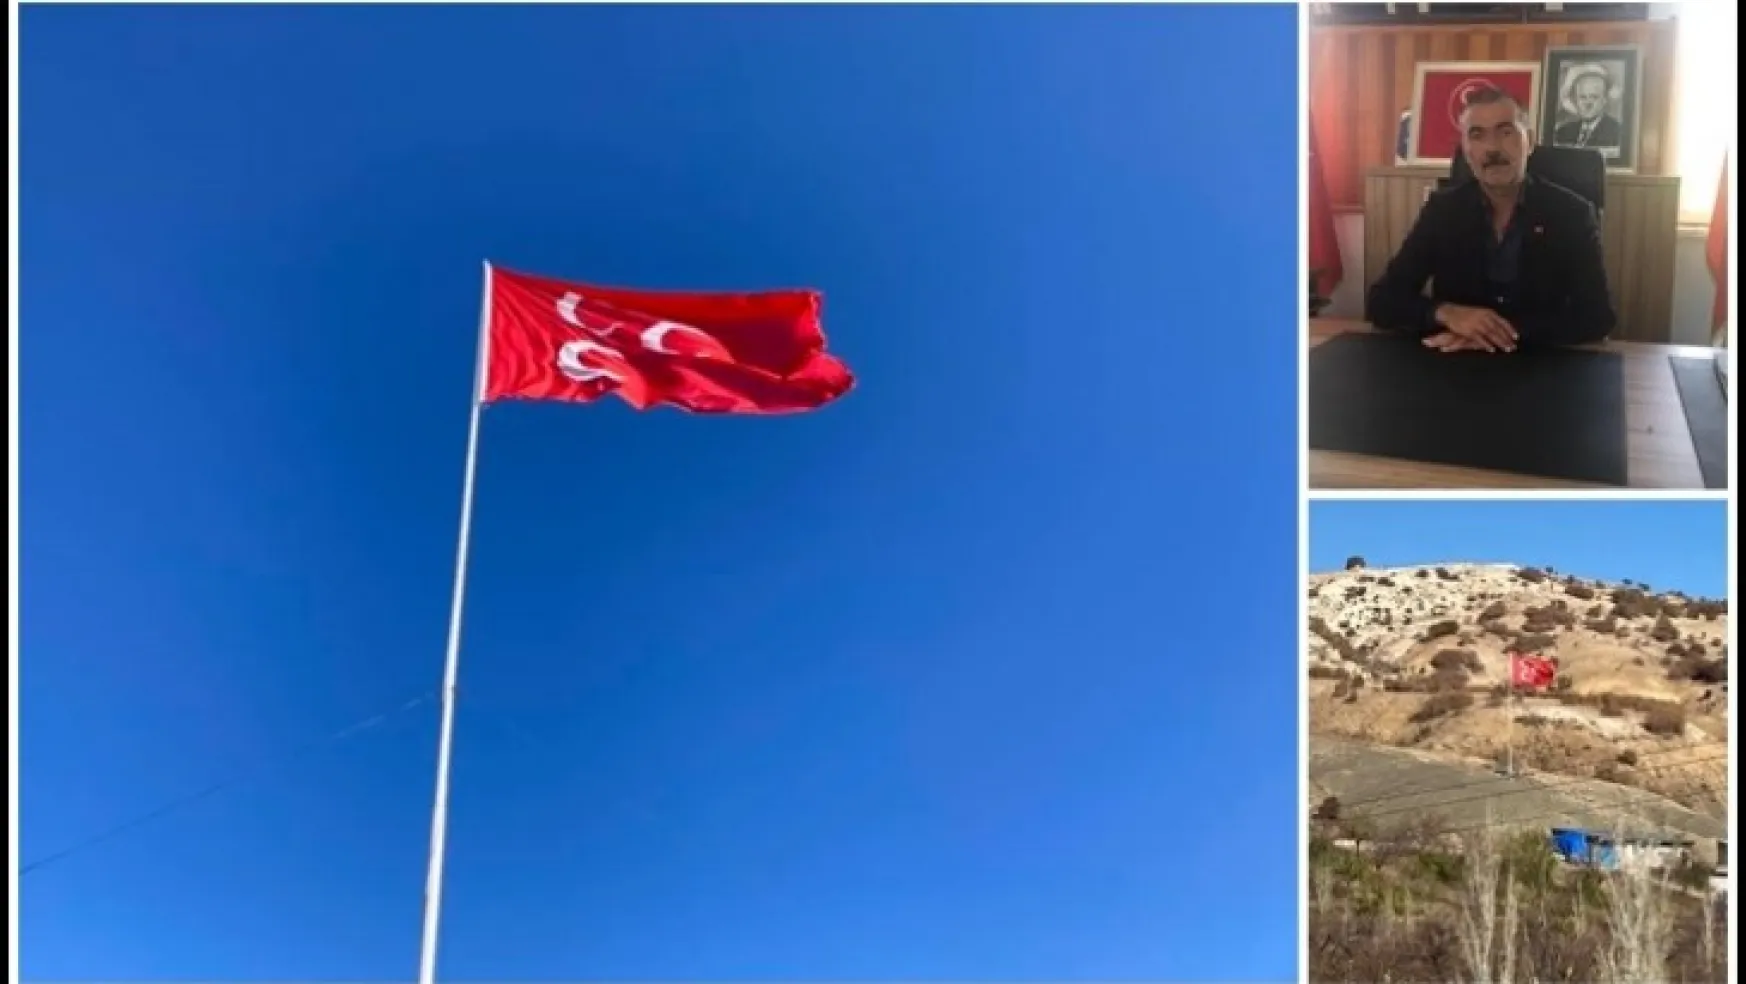 İlisuluk'ta Dev Üç Hilal Bayrağı